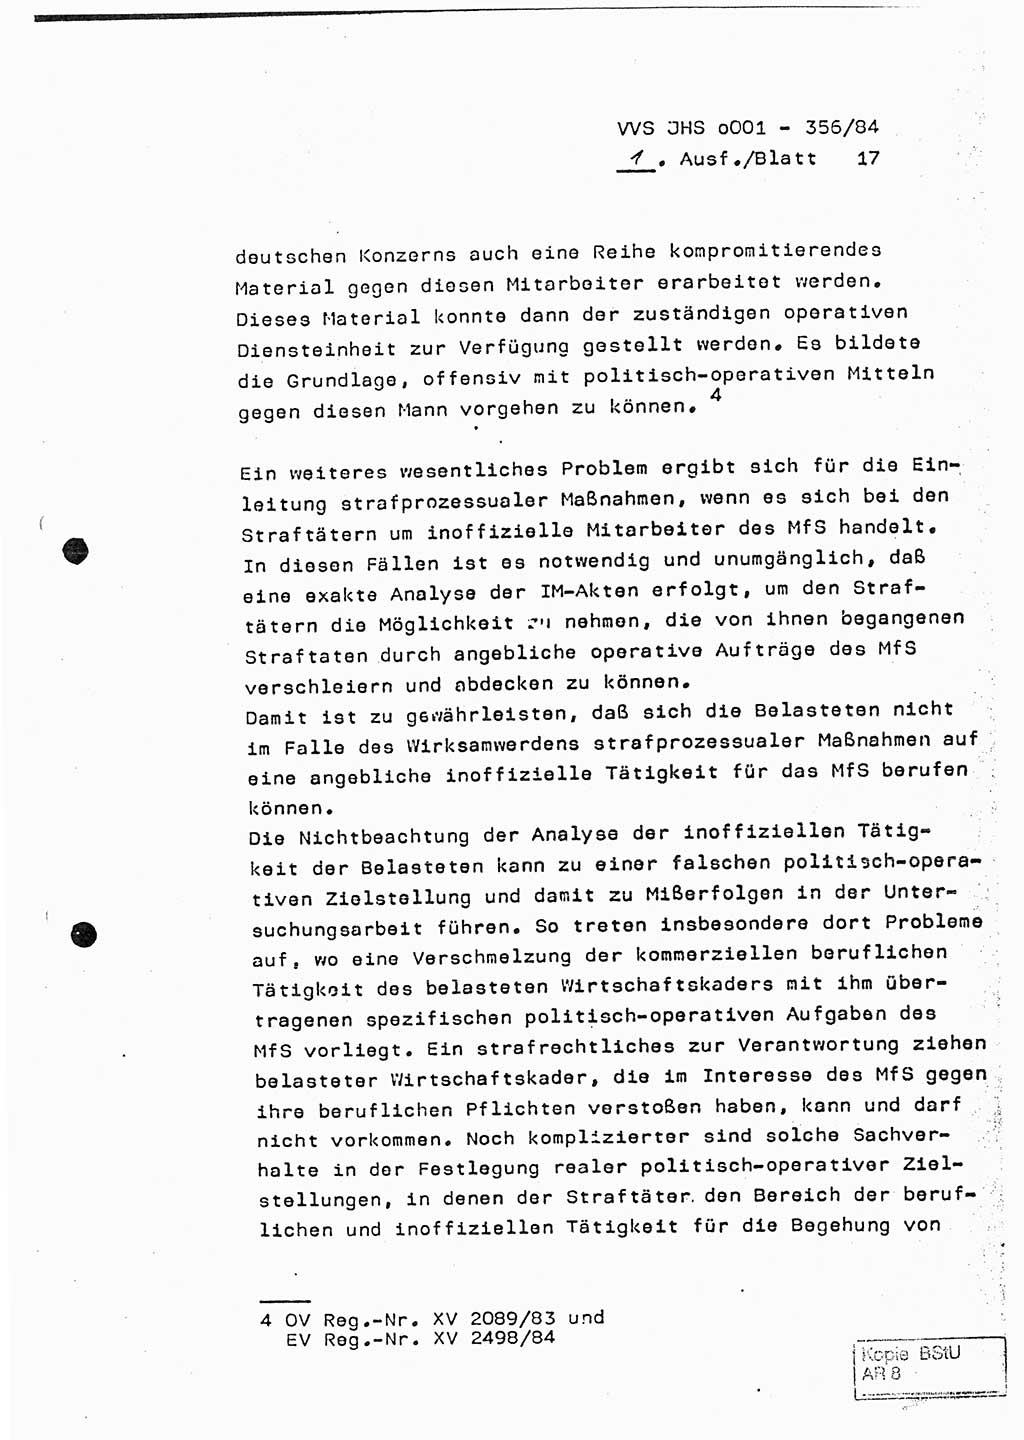 Diplomarbeit, Major Lutz Rahaus (HA Ⅸ/3), Ministerium für Staatssicherheit (MfS) [Deutsche Demokratische Republik (DDR)], Juristische Hochschule (JHS), Vertrauliche Verschlußsache (VVS) o001-356/84, Potsdam 1984, Seite 17 (Dipl.-Arb. MfS DDR JHS VVS o001-356/84 1984, S. 17)